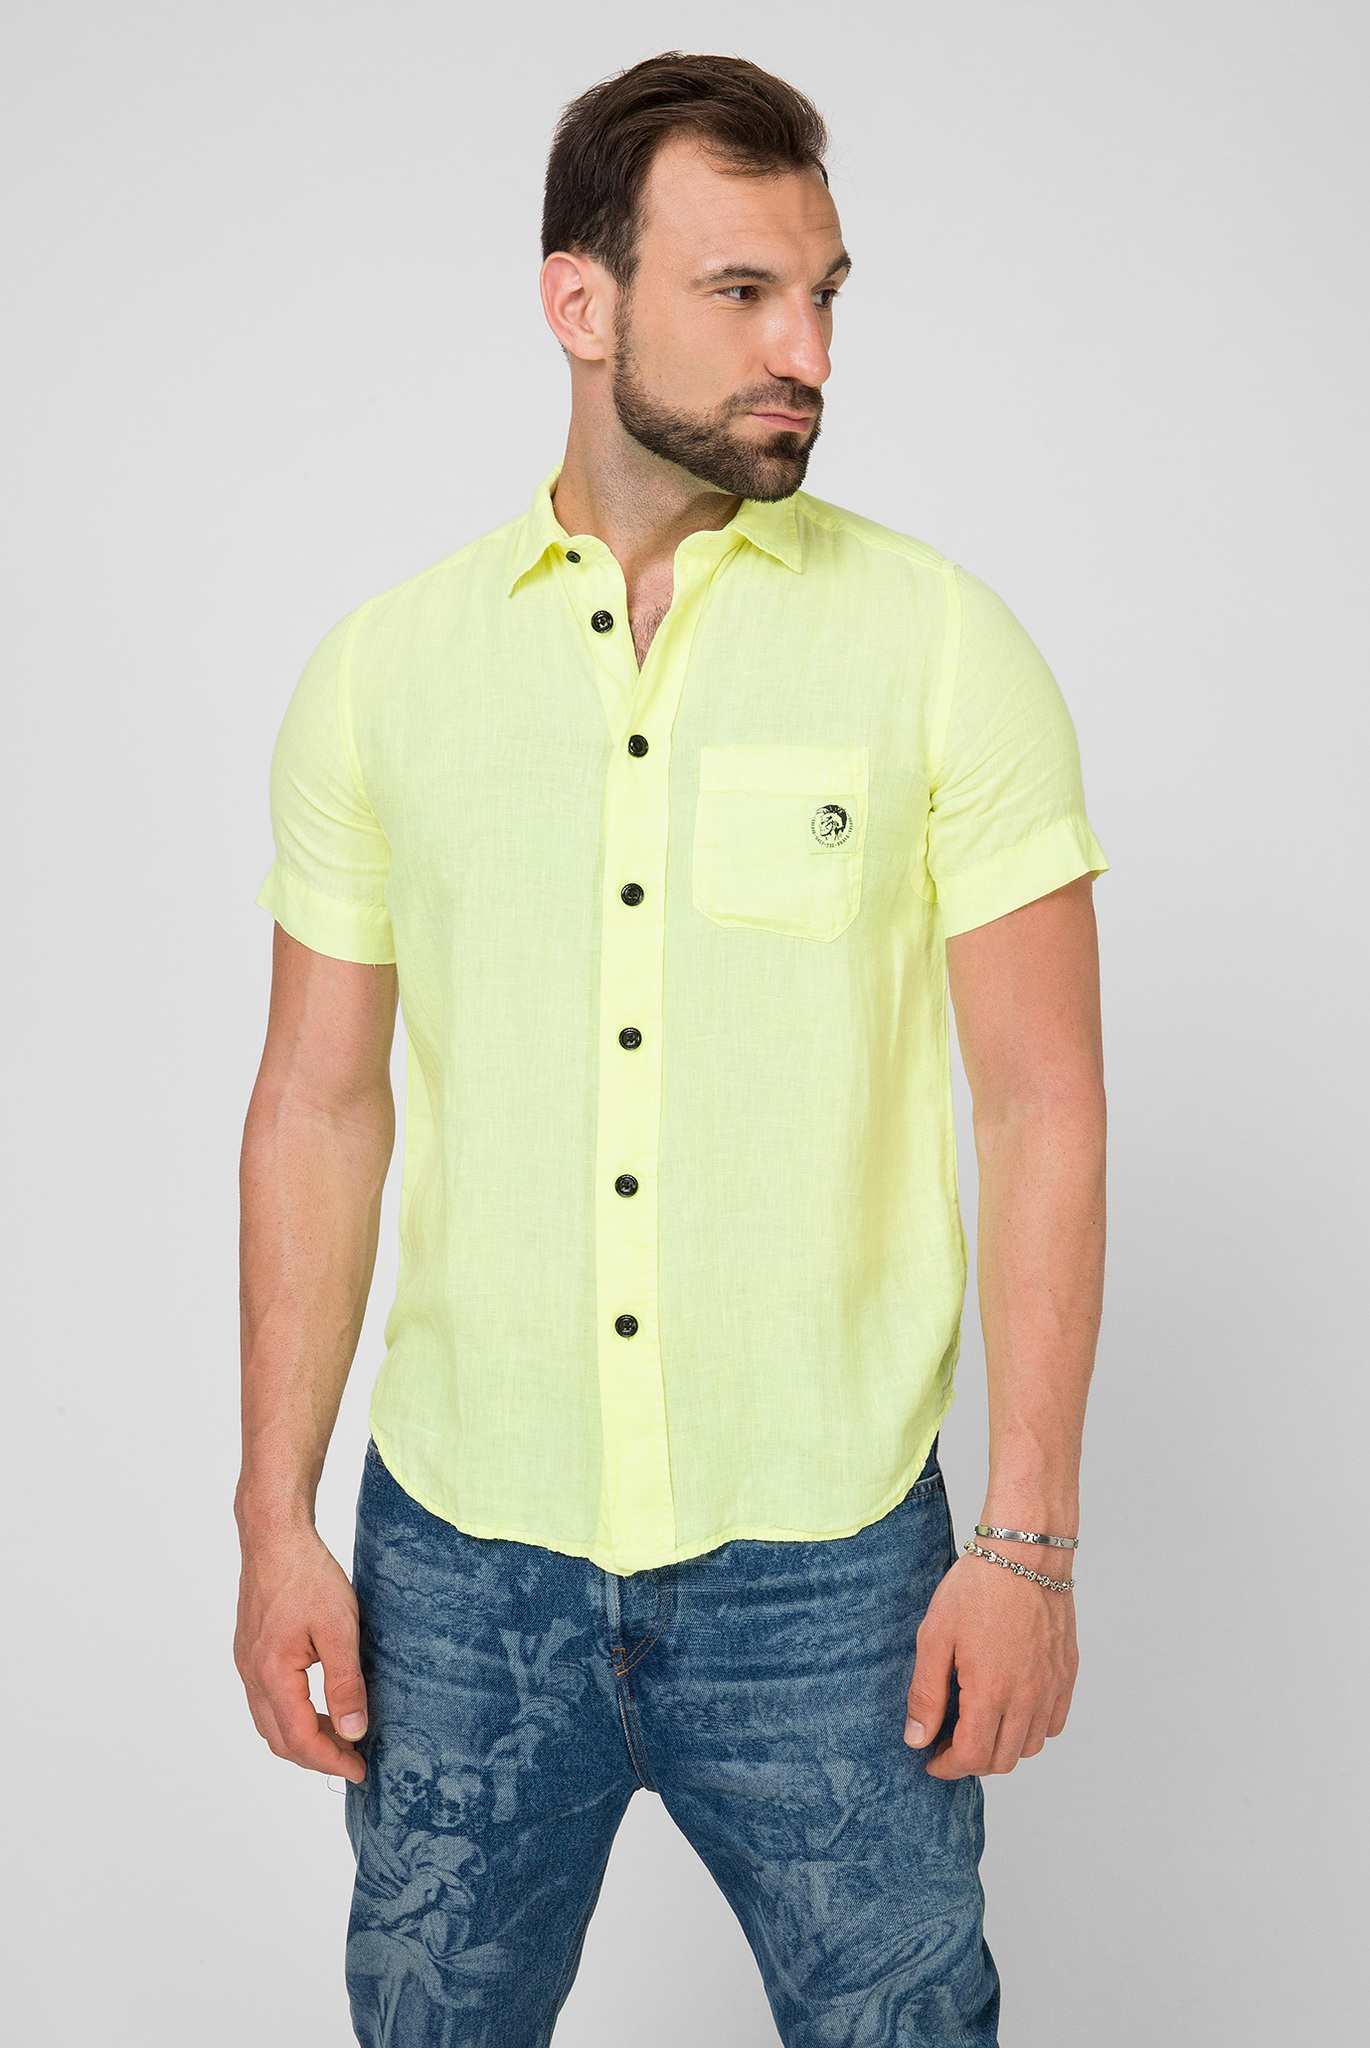 Мужская желтая льняная рубашка S-kiruma 1